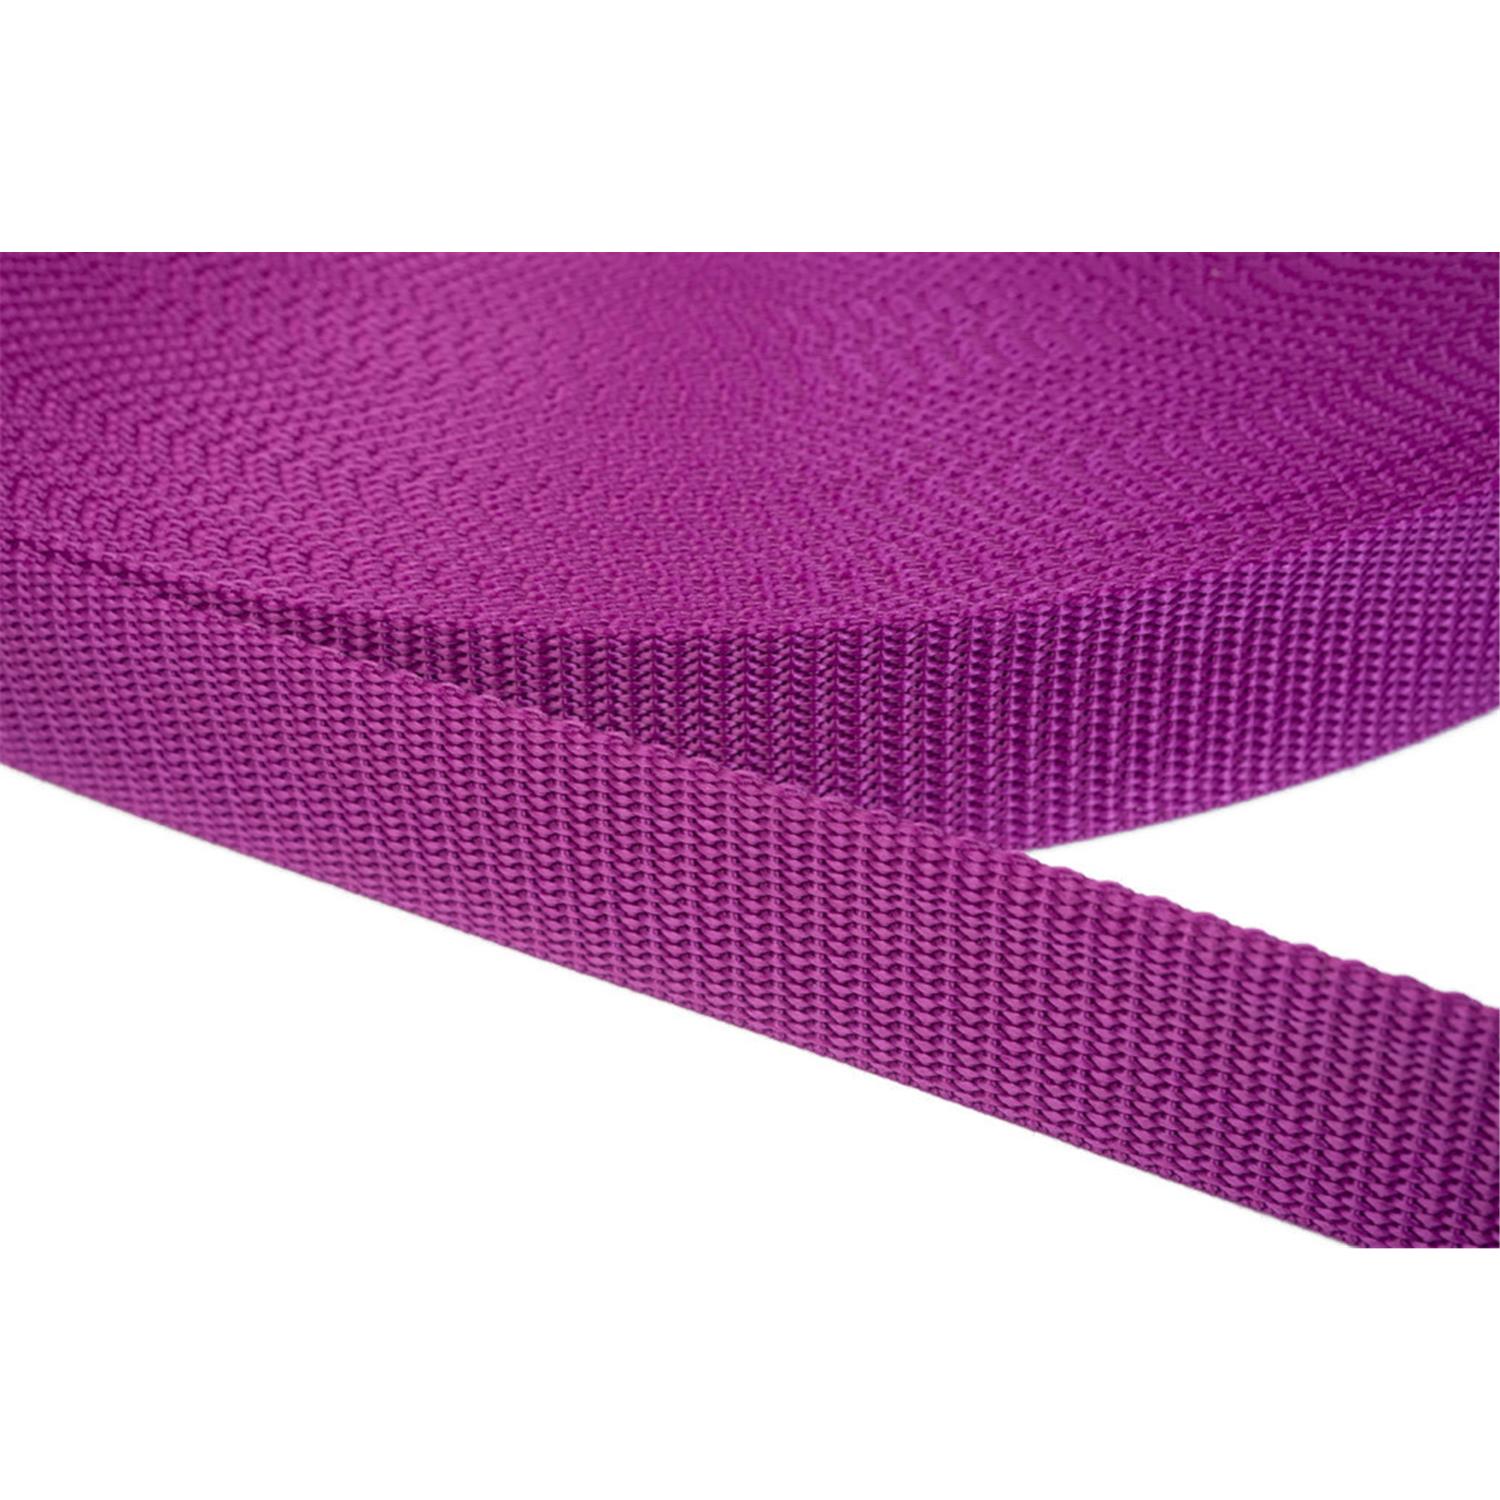 Gurtband 25mm breit aus Polypropylen in 41 Farben 22 - violettrot 6 Meter